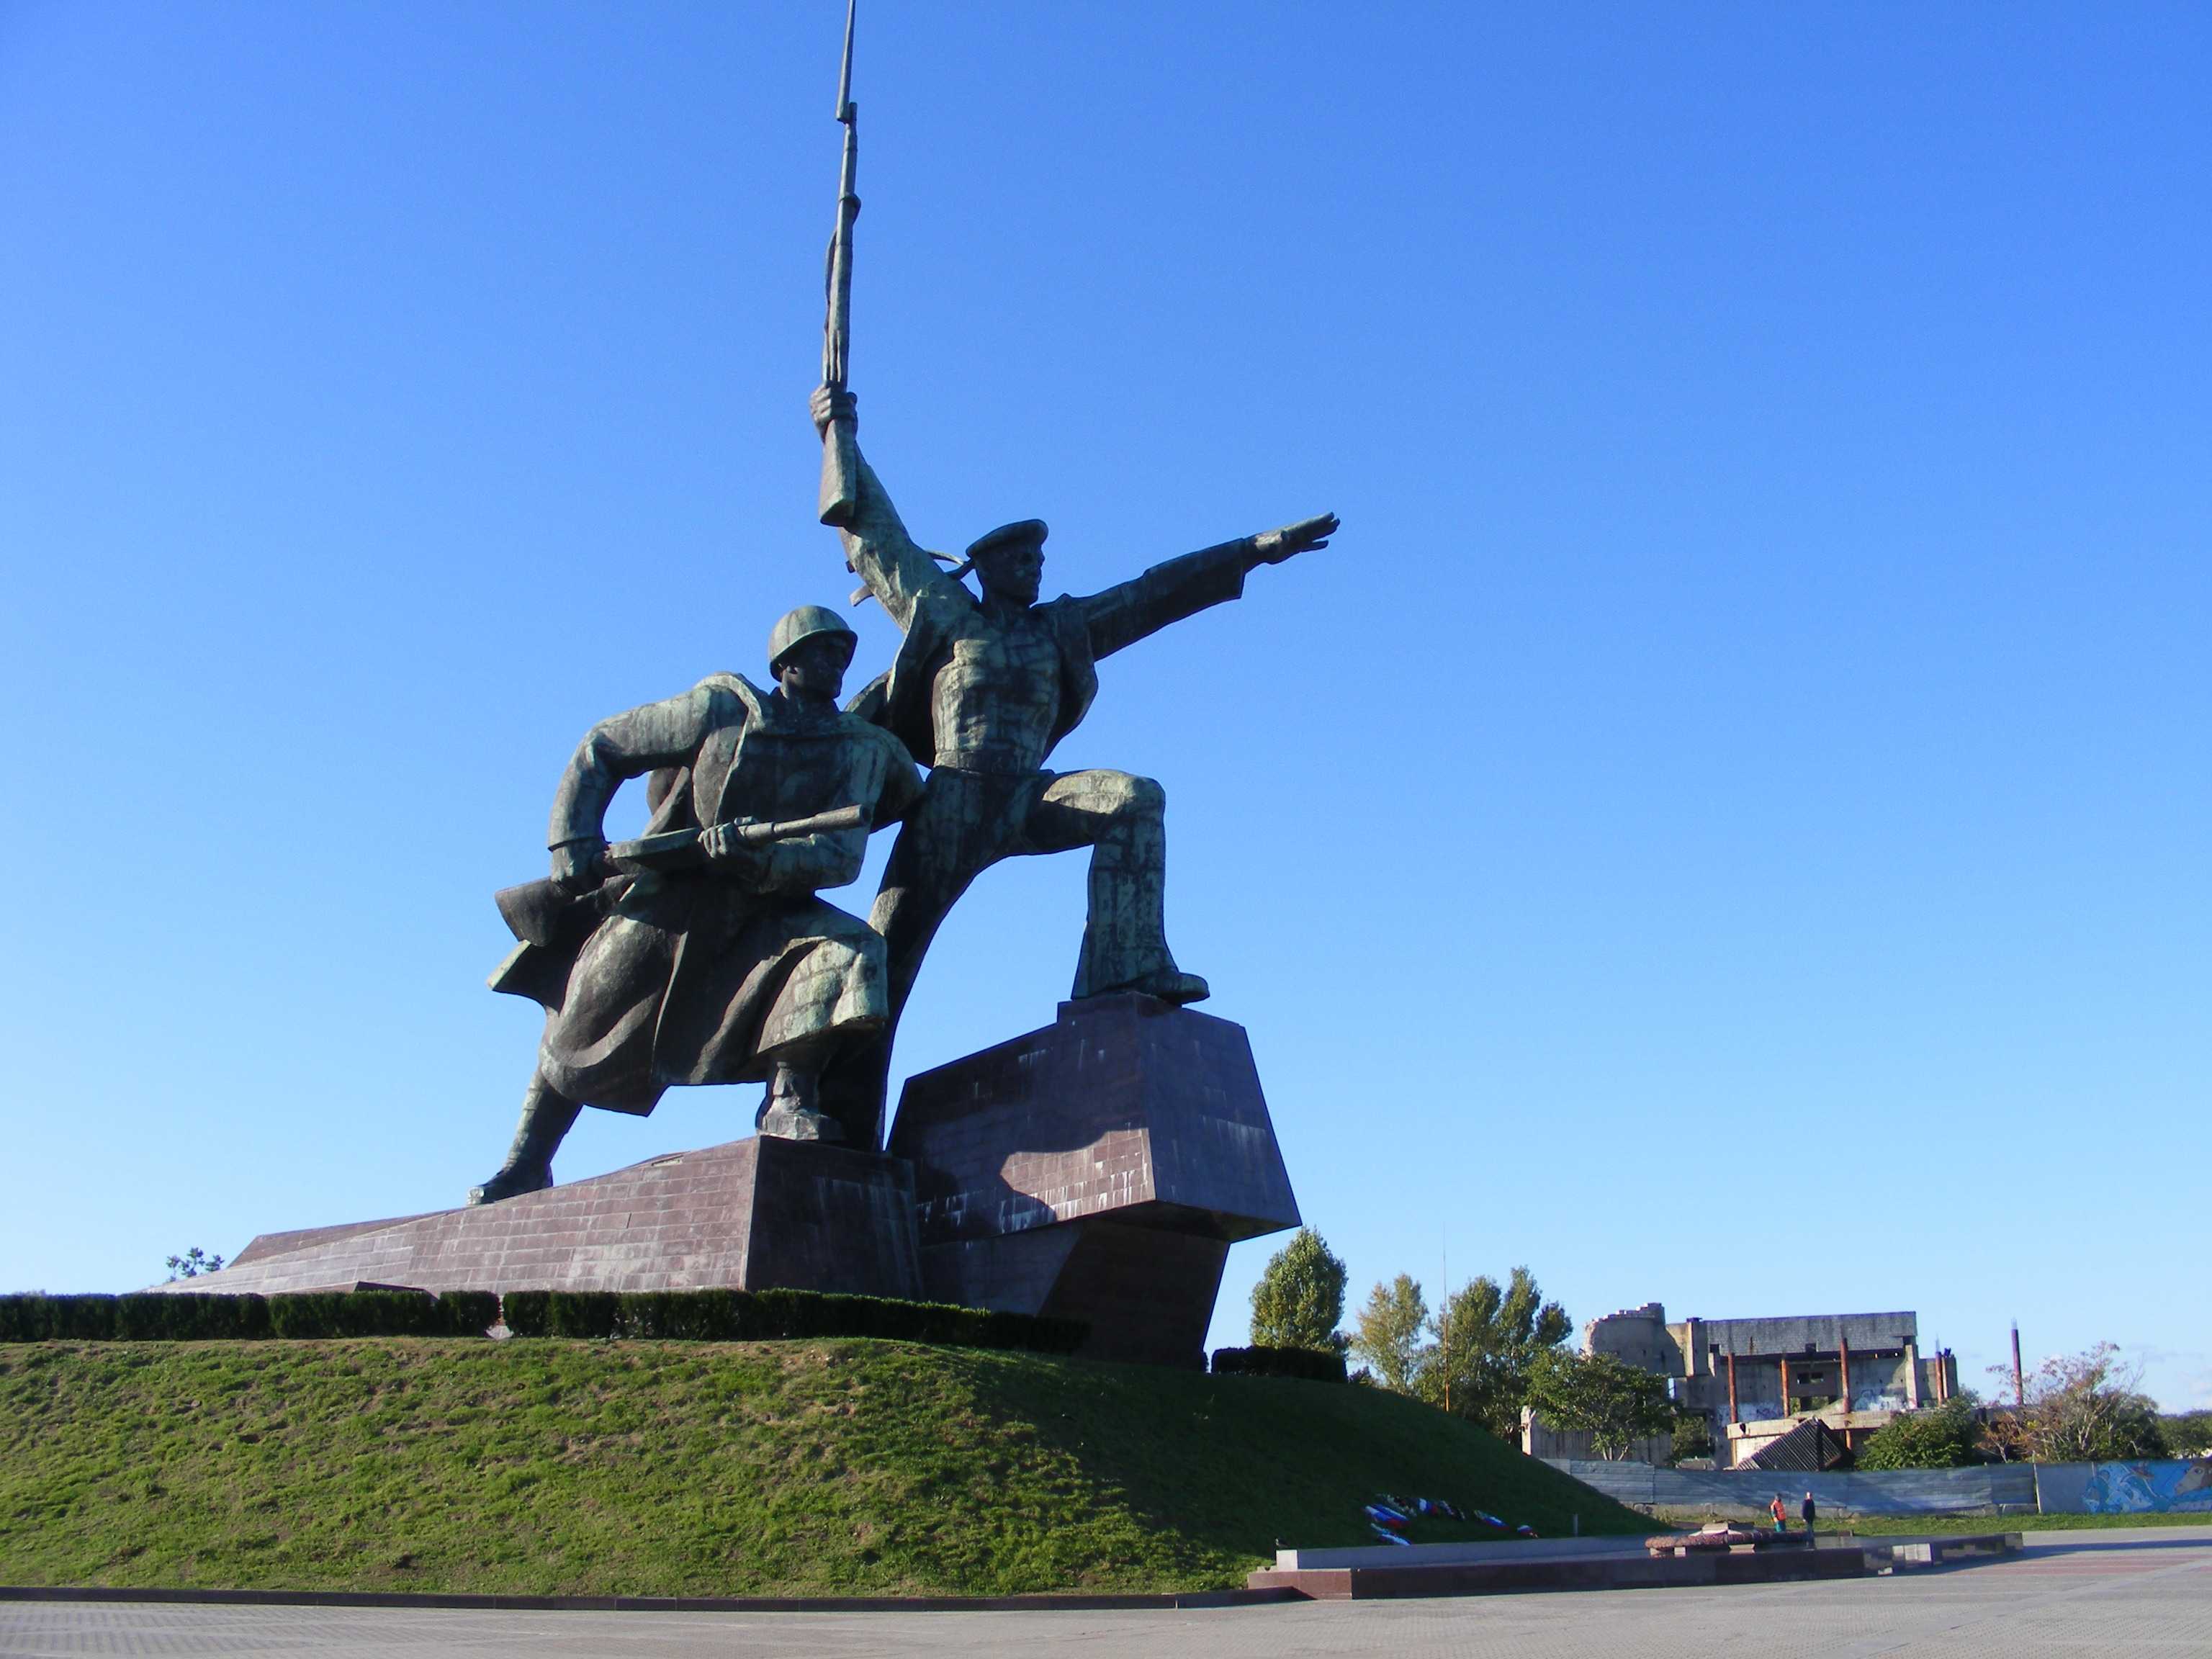 Памятник затопленным кораблям в севастополе – монумент в память о героической обороне города в 1854-1855 годах